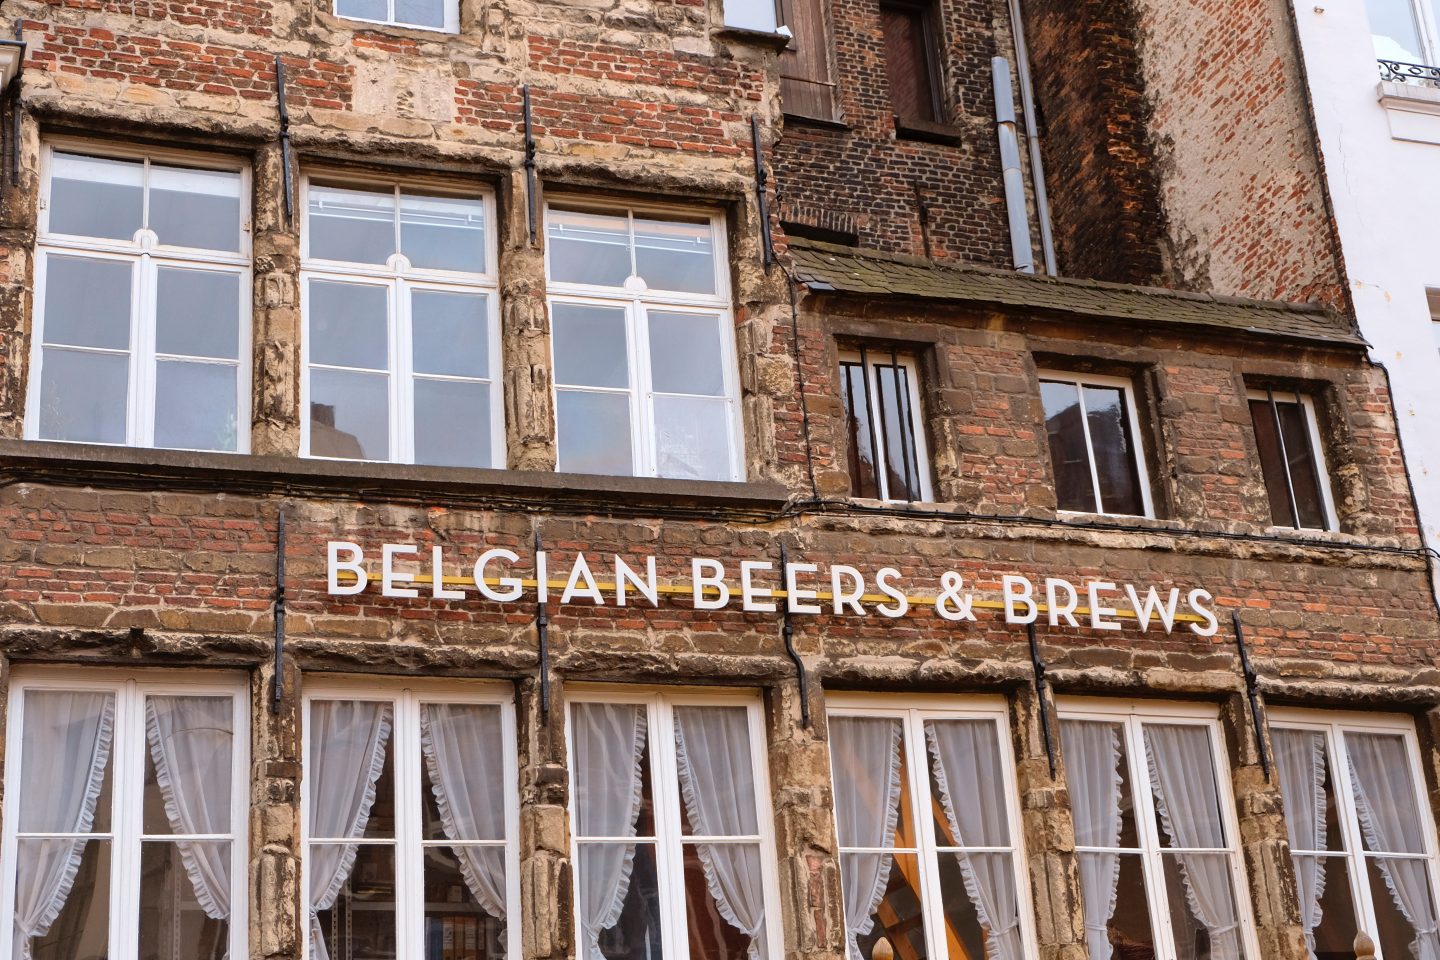 Et hus med teksten Belgian Beers